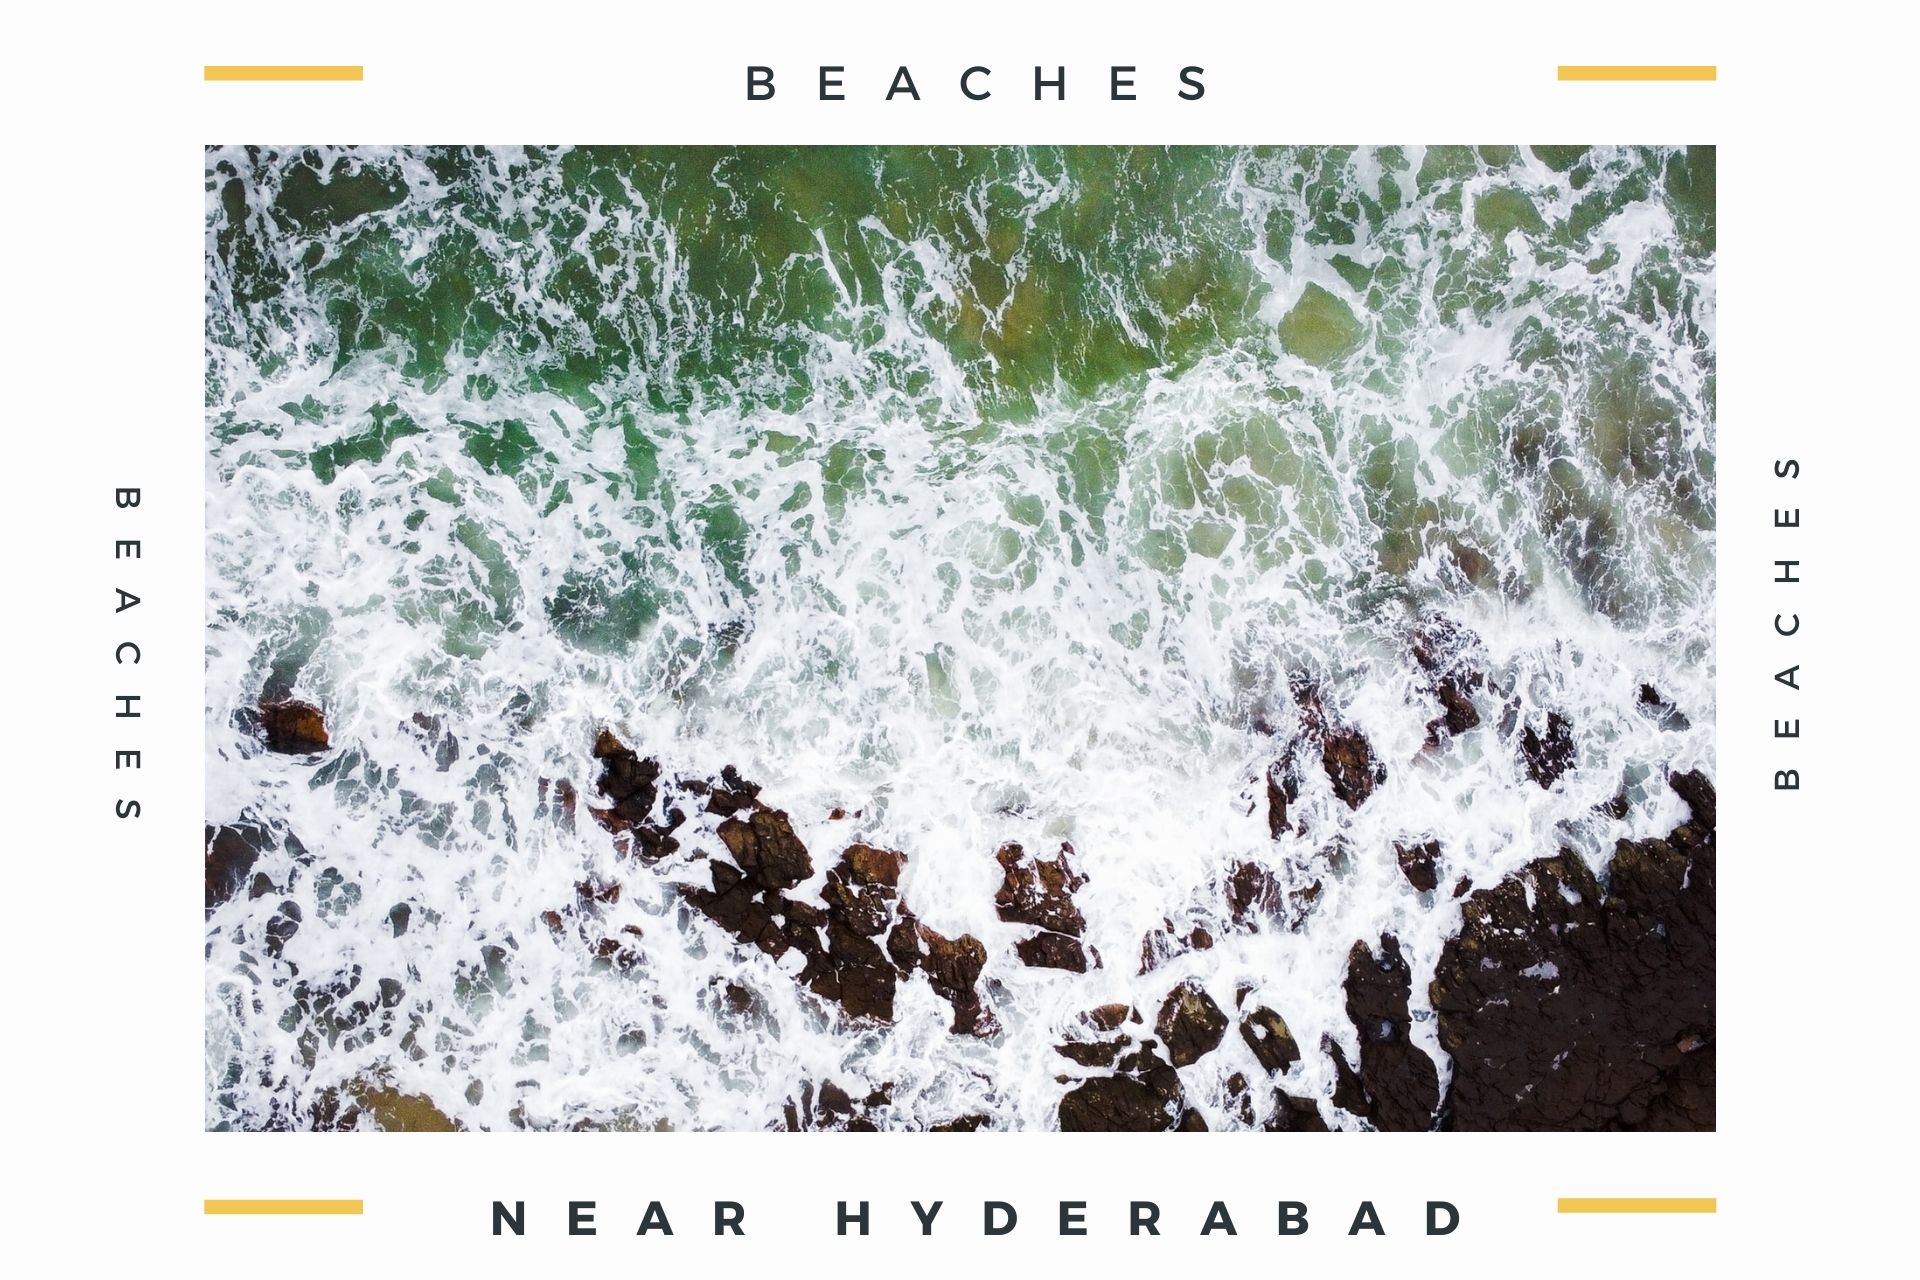 Best Beaches to visit near Hyderabad